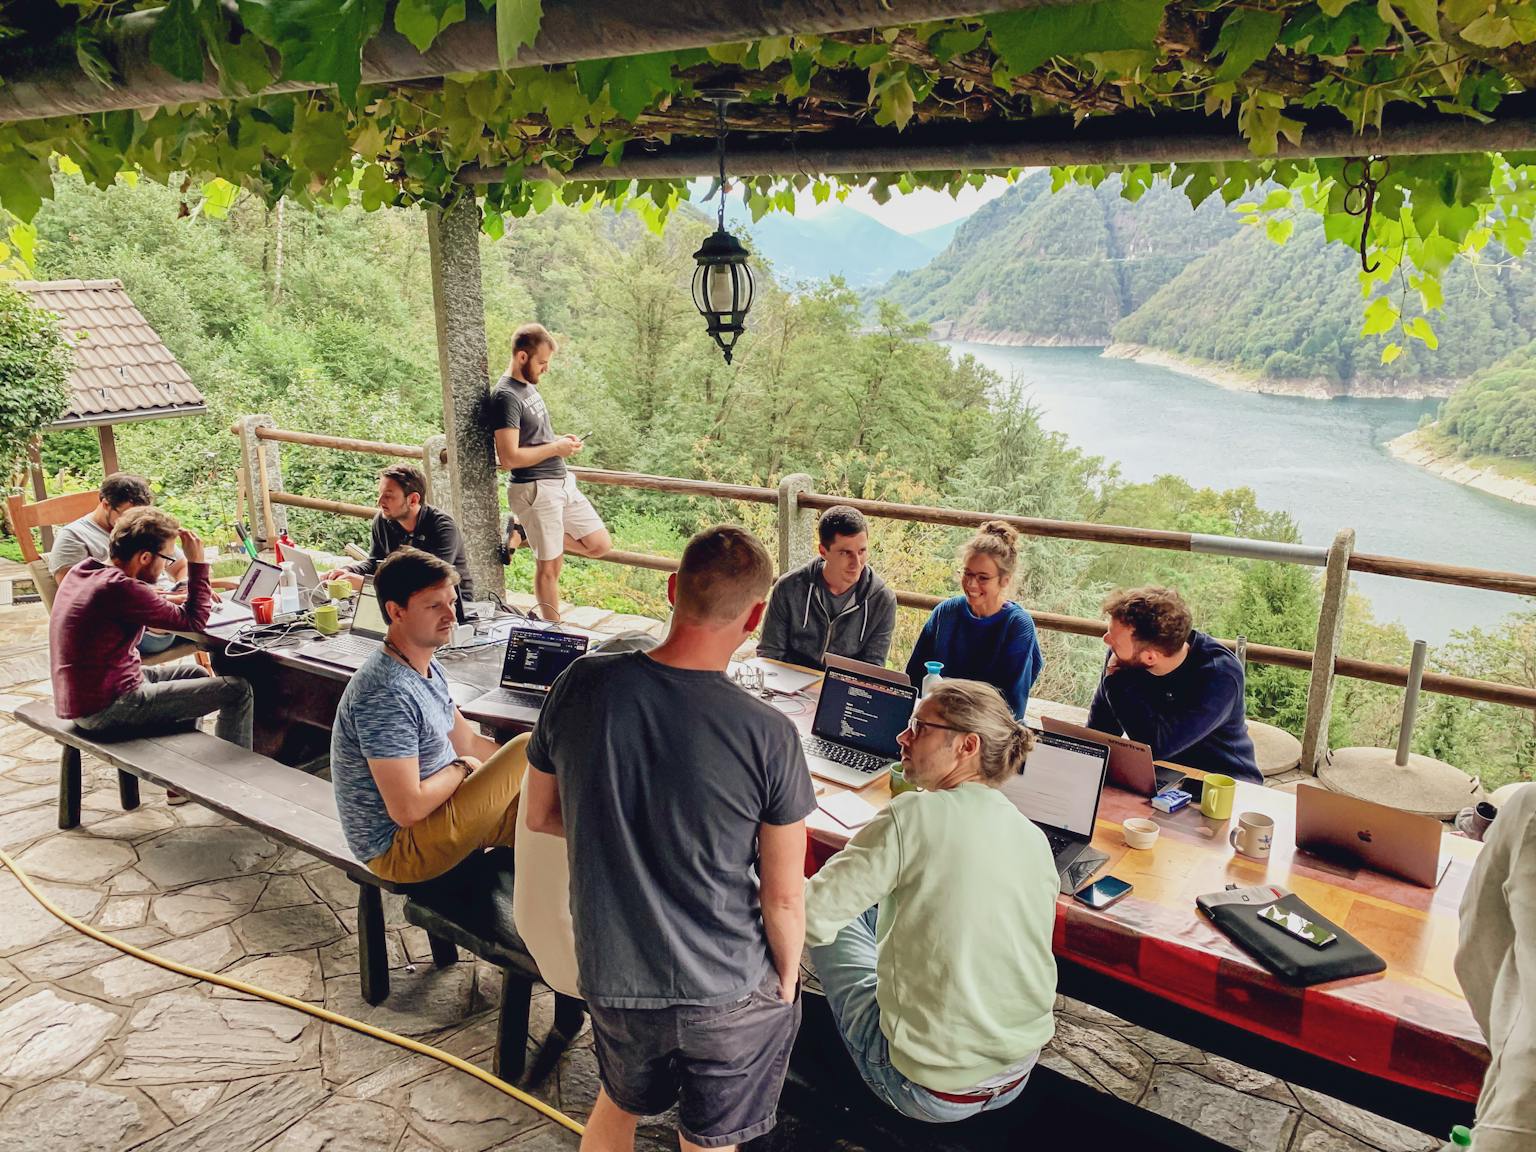 smartive Team am arbeiten an einem Tisch im freien mit dem Valle Verzasca im Hintergrund